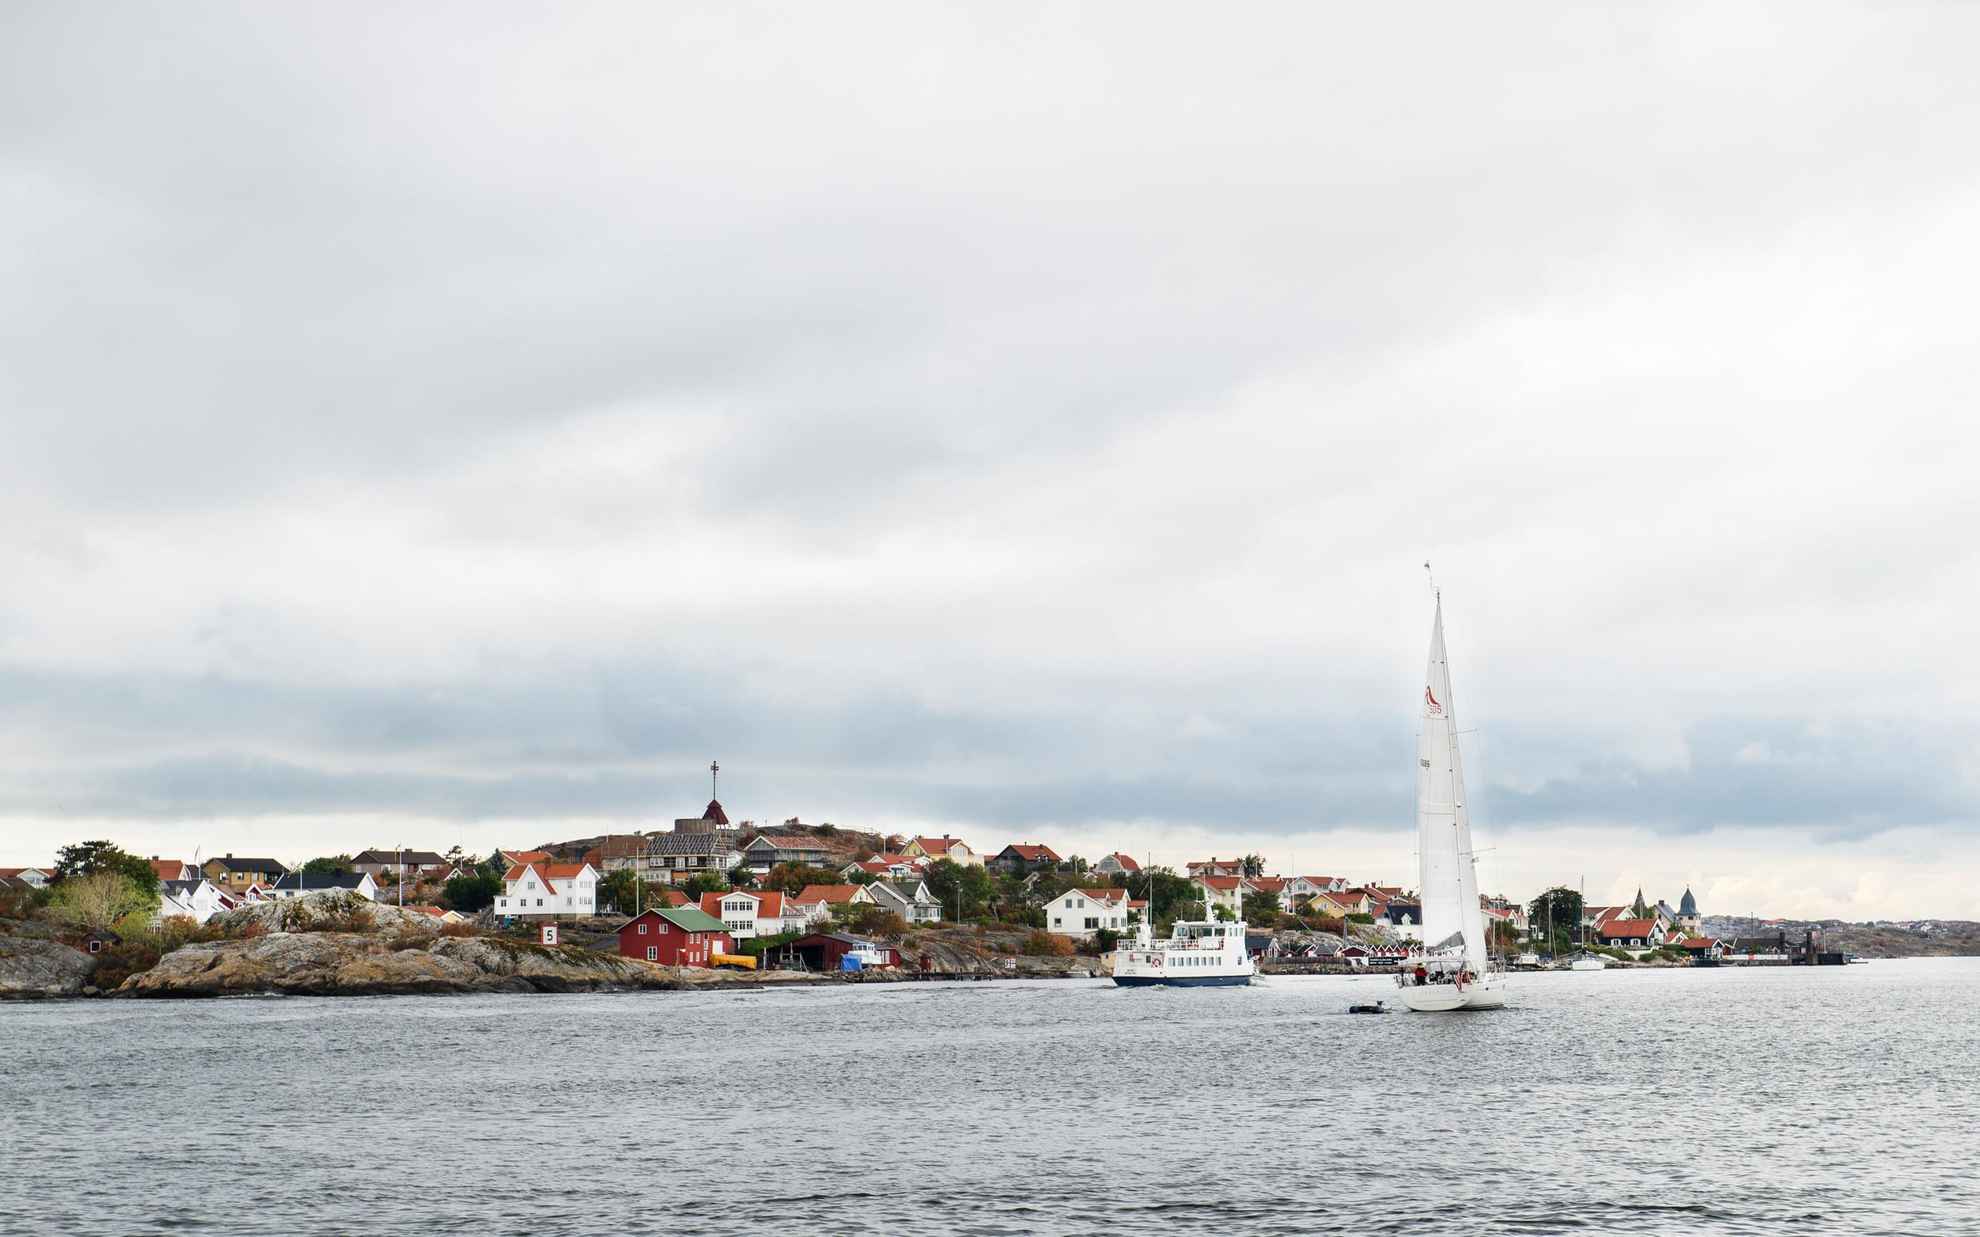 Eine kleine Fähre und ein Segelboot im Meer, vorbei an einer Insel mit vielen Häusern außerhalb von Göteborg.